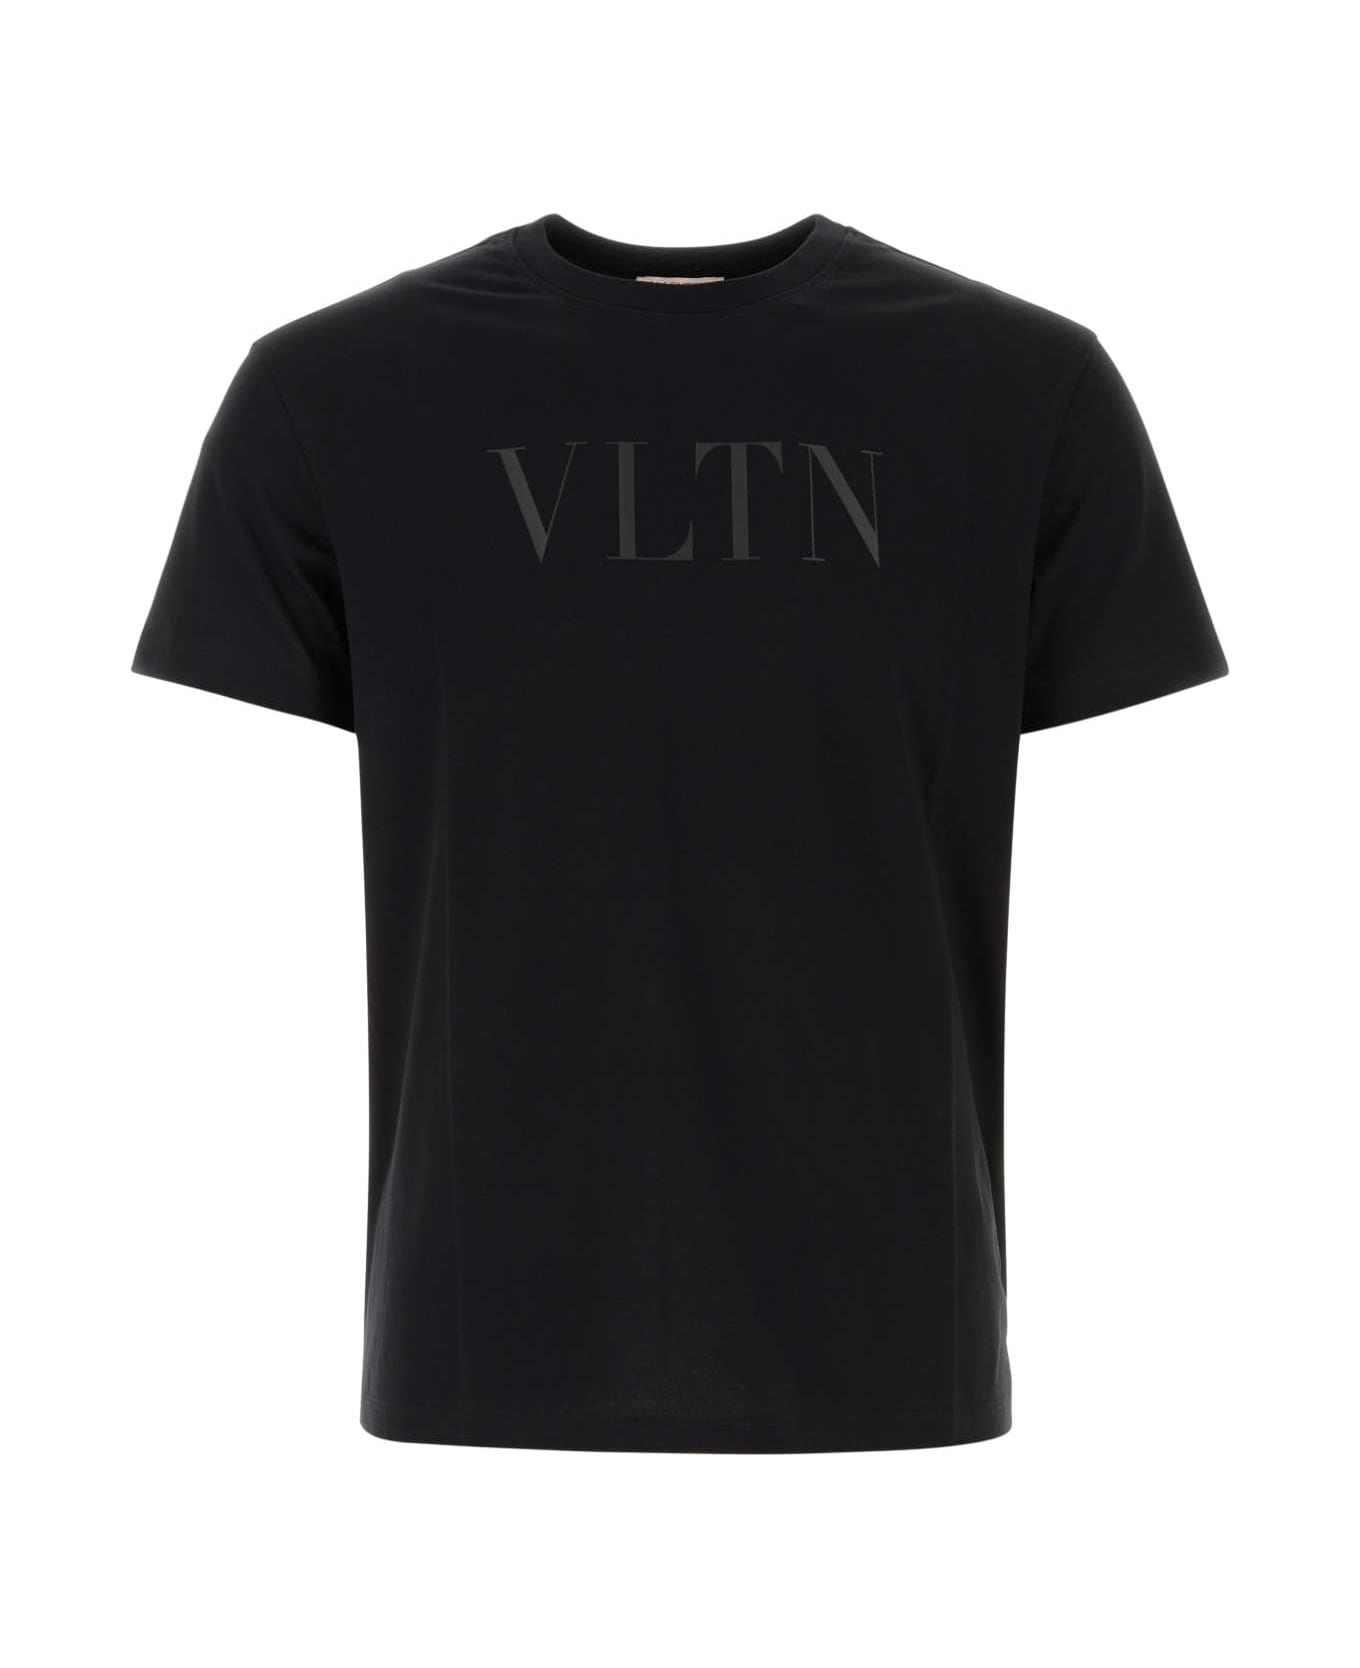 Valentino Garavani Black Cotton T-shirt - NERO